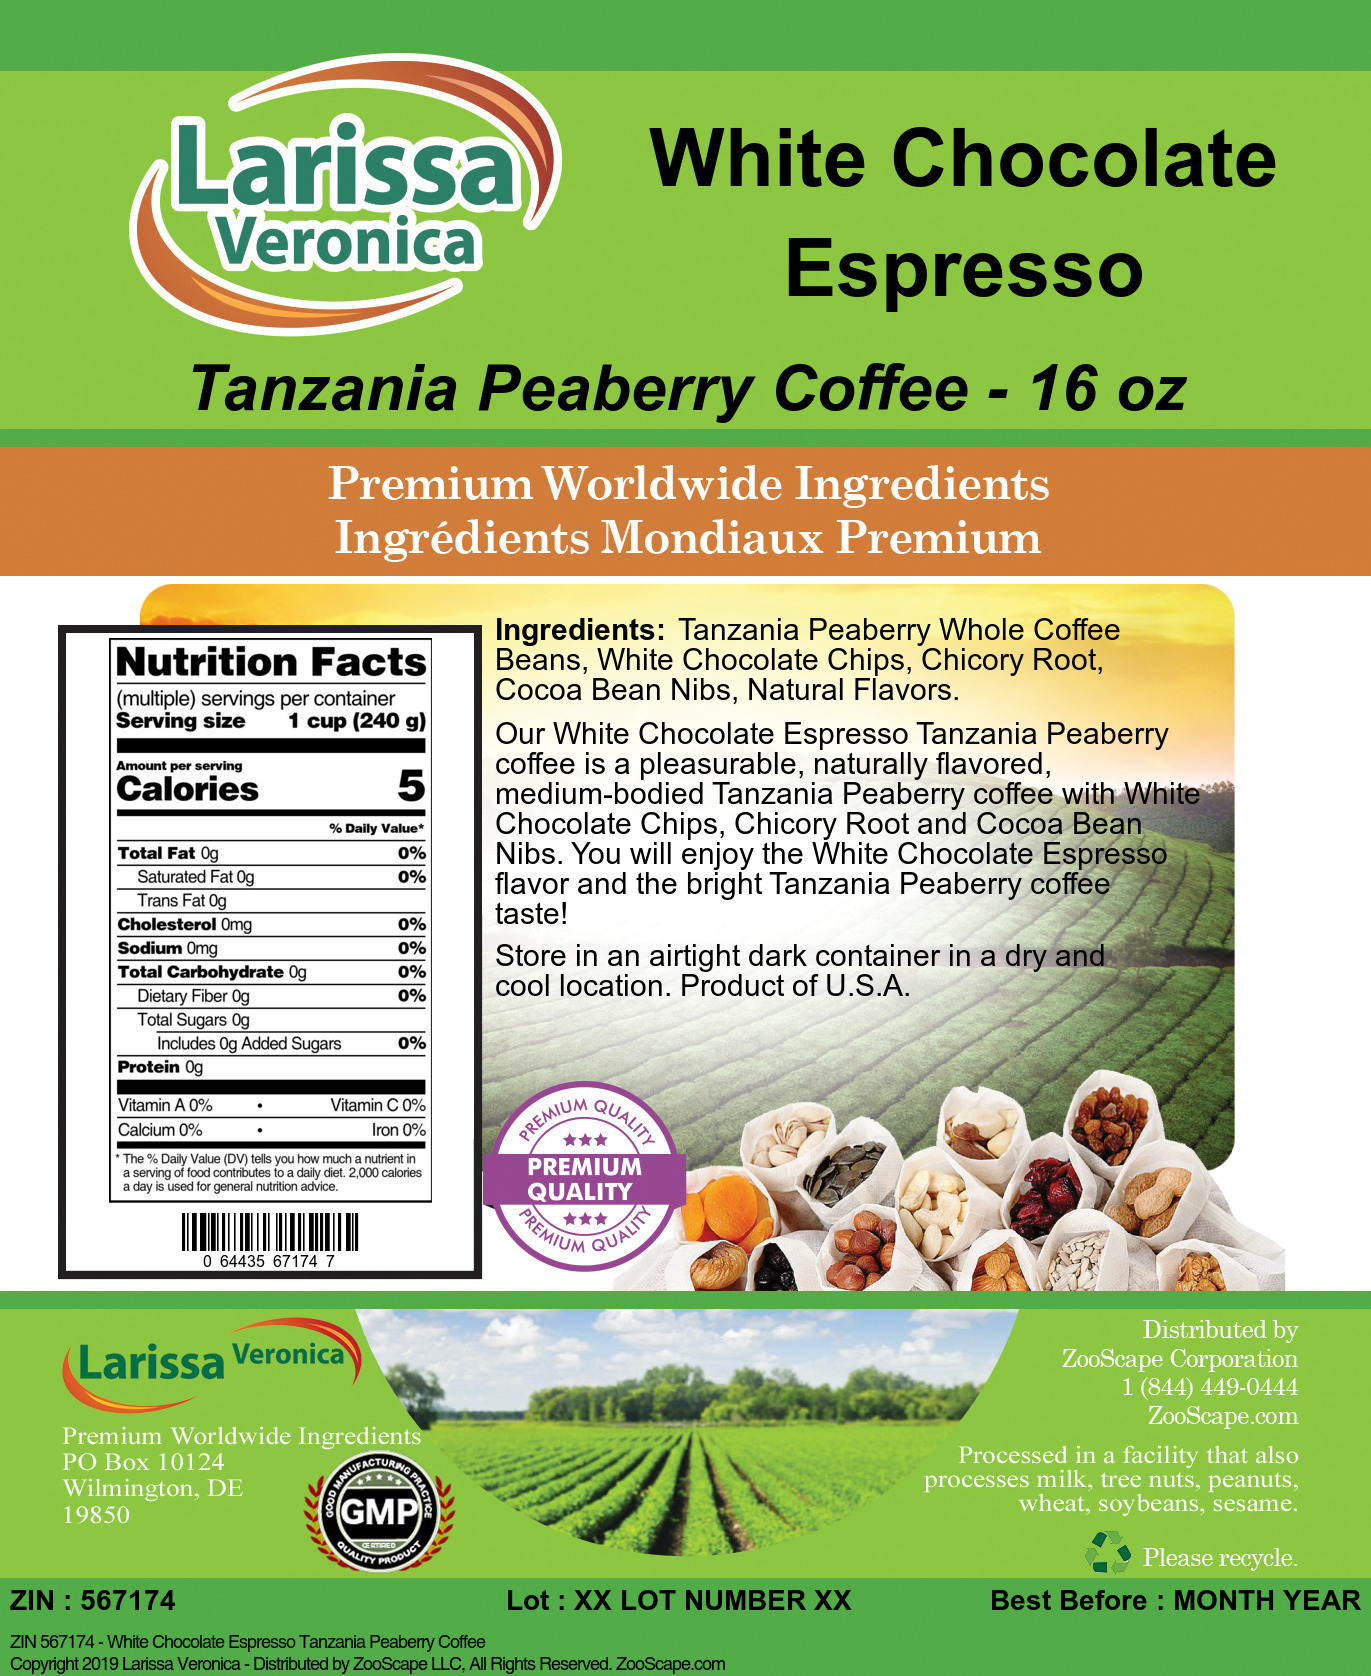 White Chocolate Espresso Tanzania Peaberry Coffee - Label